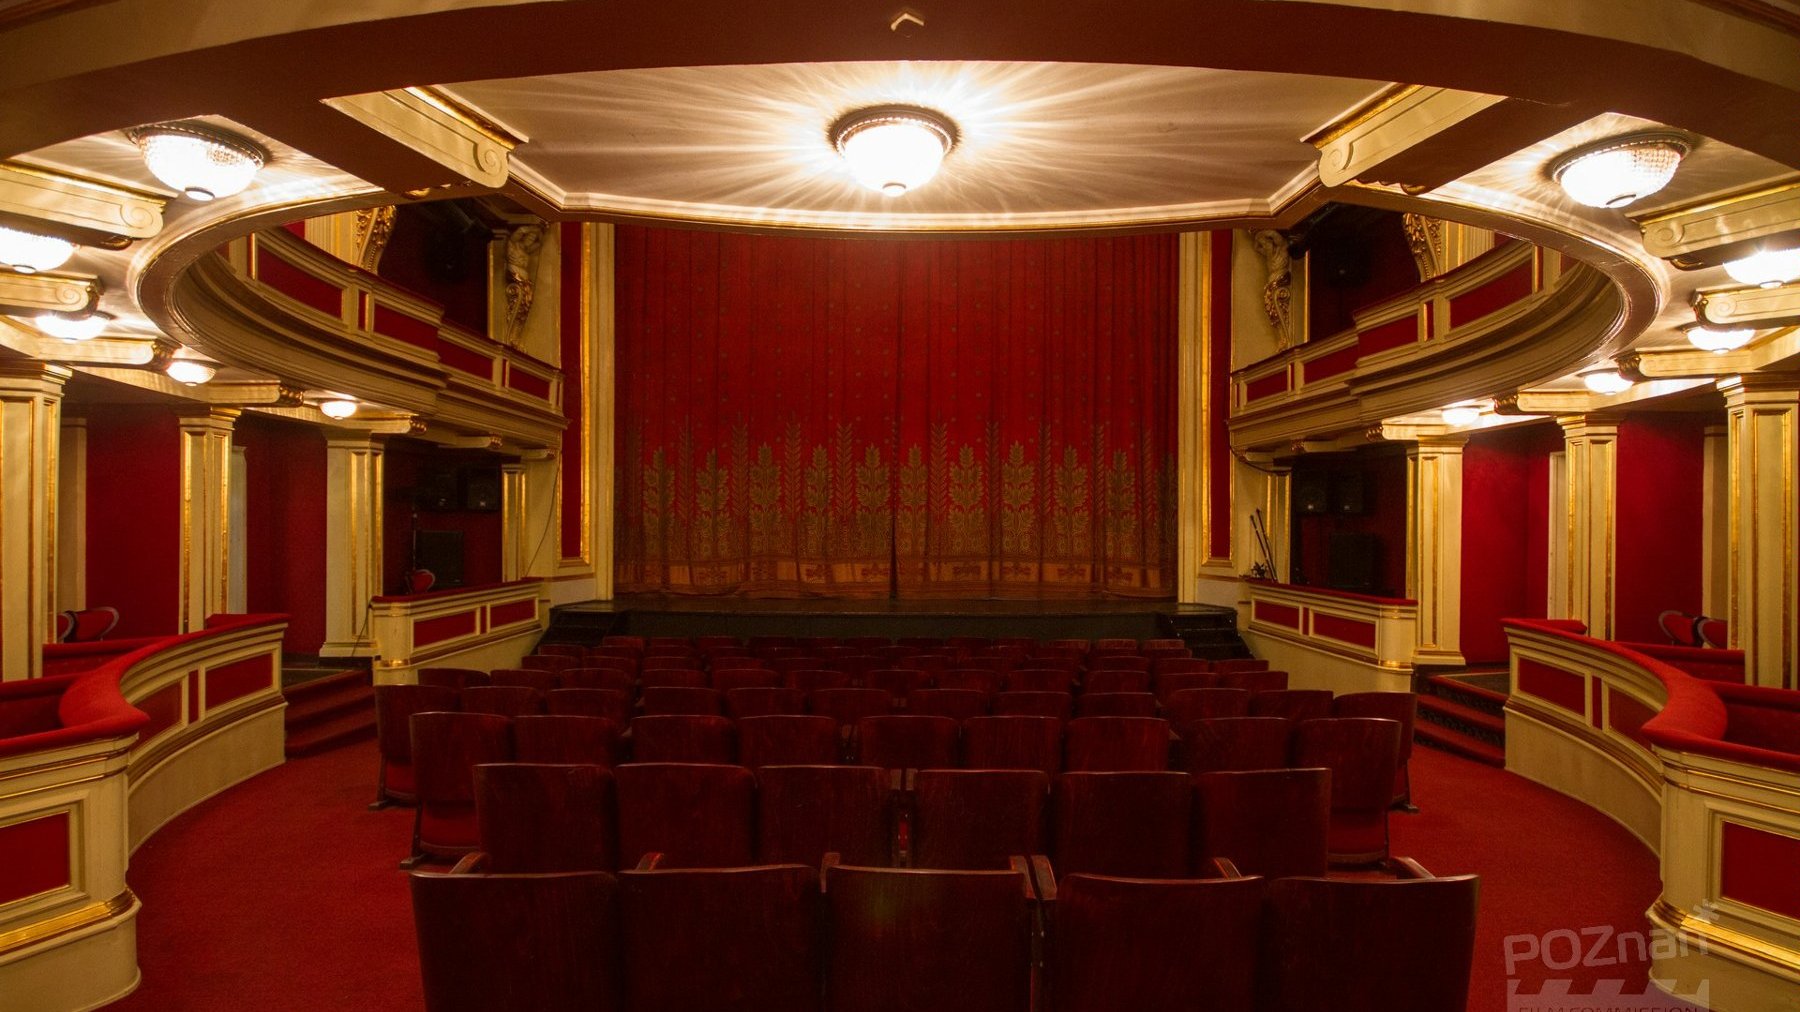 Sala teatralna, widok na scenę zasłonietą kurtyną. Czerwone krzesła i ściany ze złotymi elementami. W górze żyrandol.